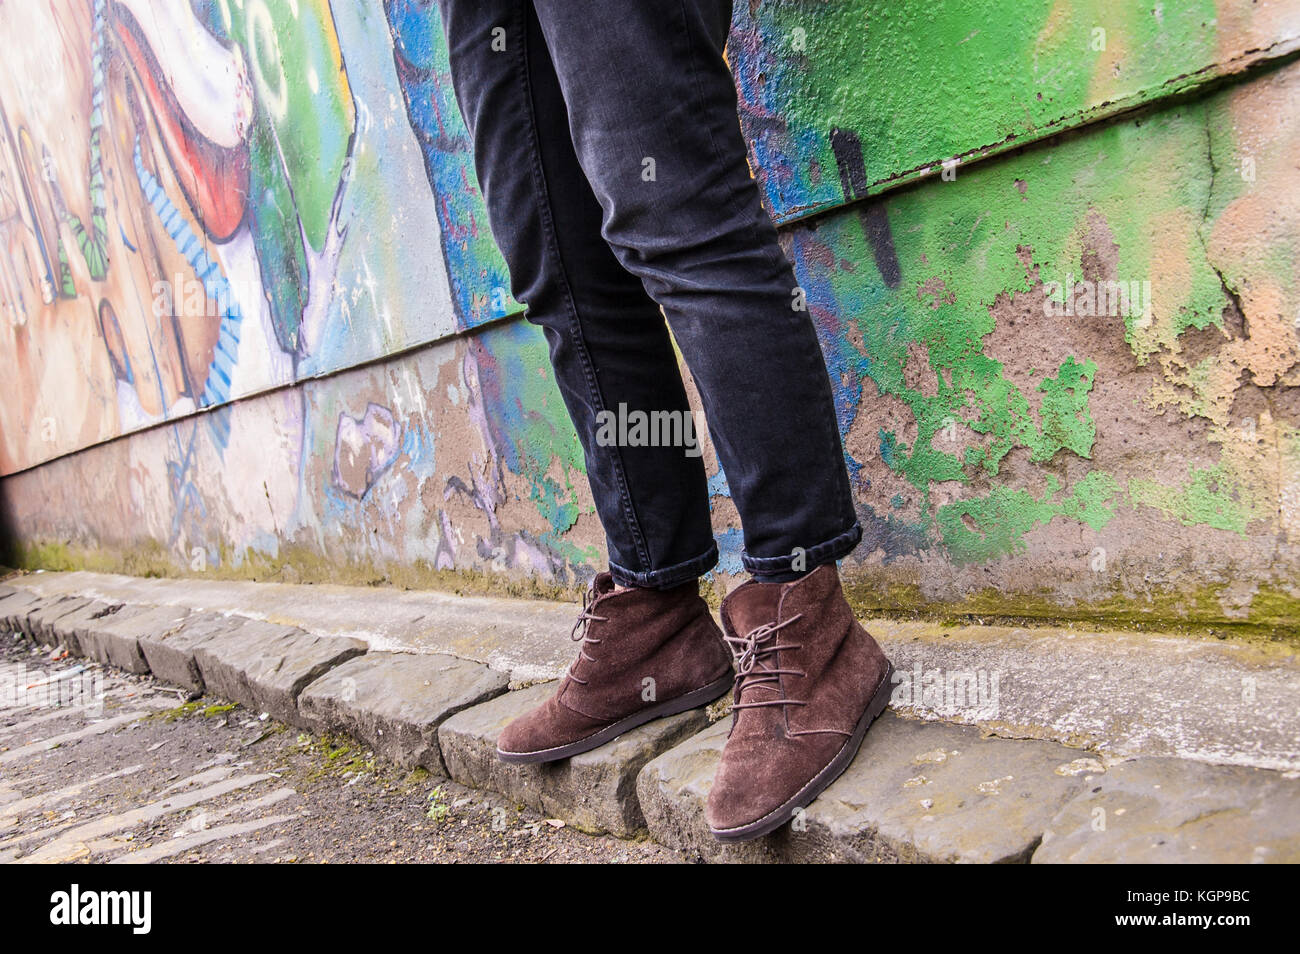 Modell trägt enge schwarze Jeans Skinny Hose und Brown suede Ankle Boots  und Wandern vor einer Graffiti-wand. Konzentrieren Sie sich auf die Beine  und Schuhe. Oberfläche Stockfotografie - Alamy